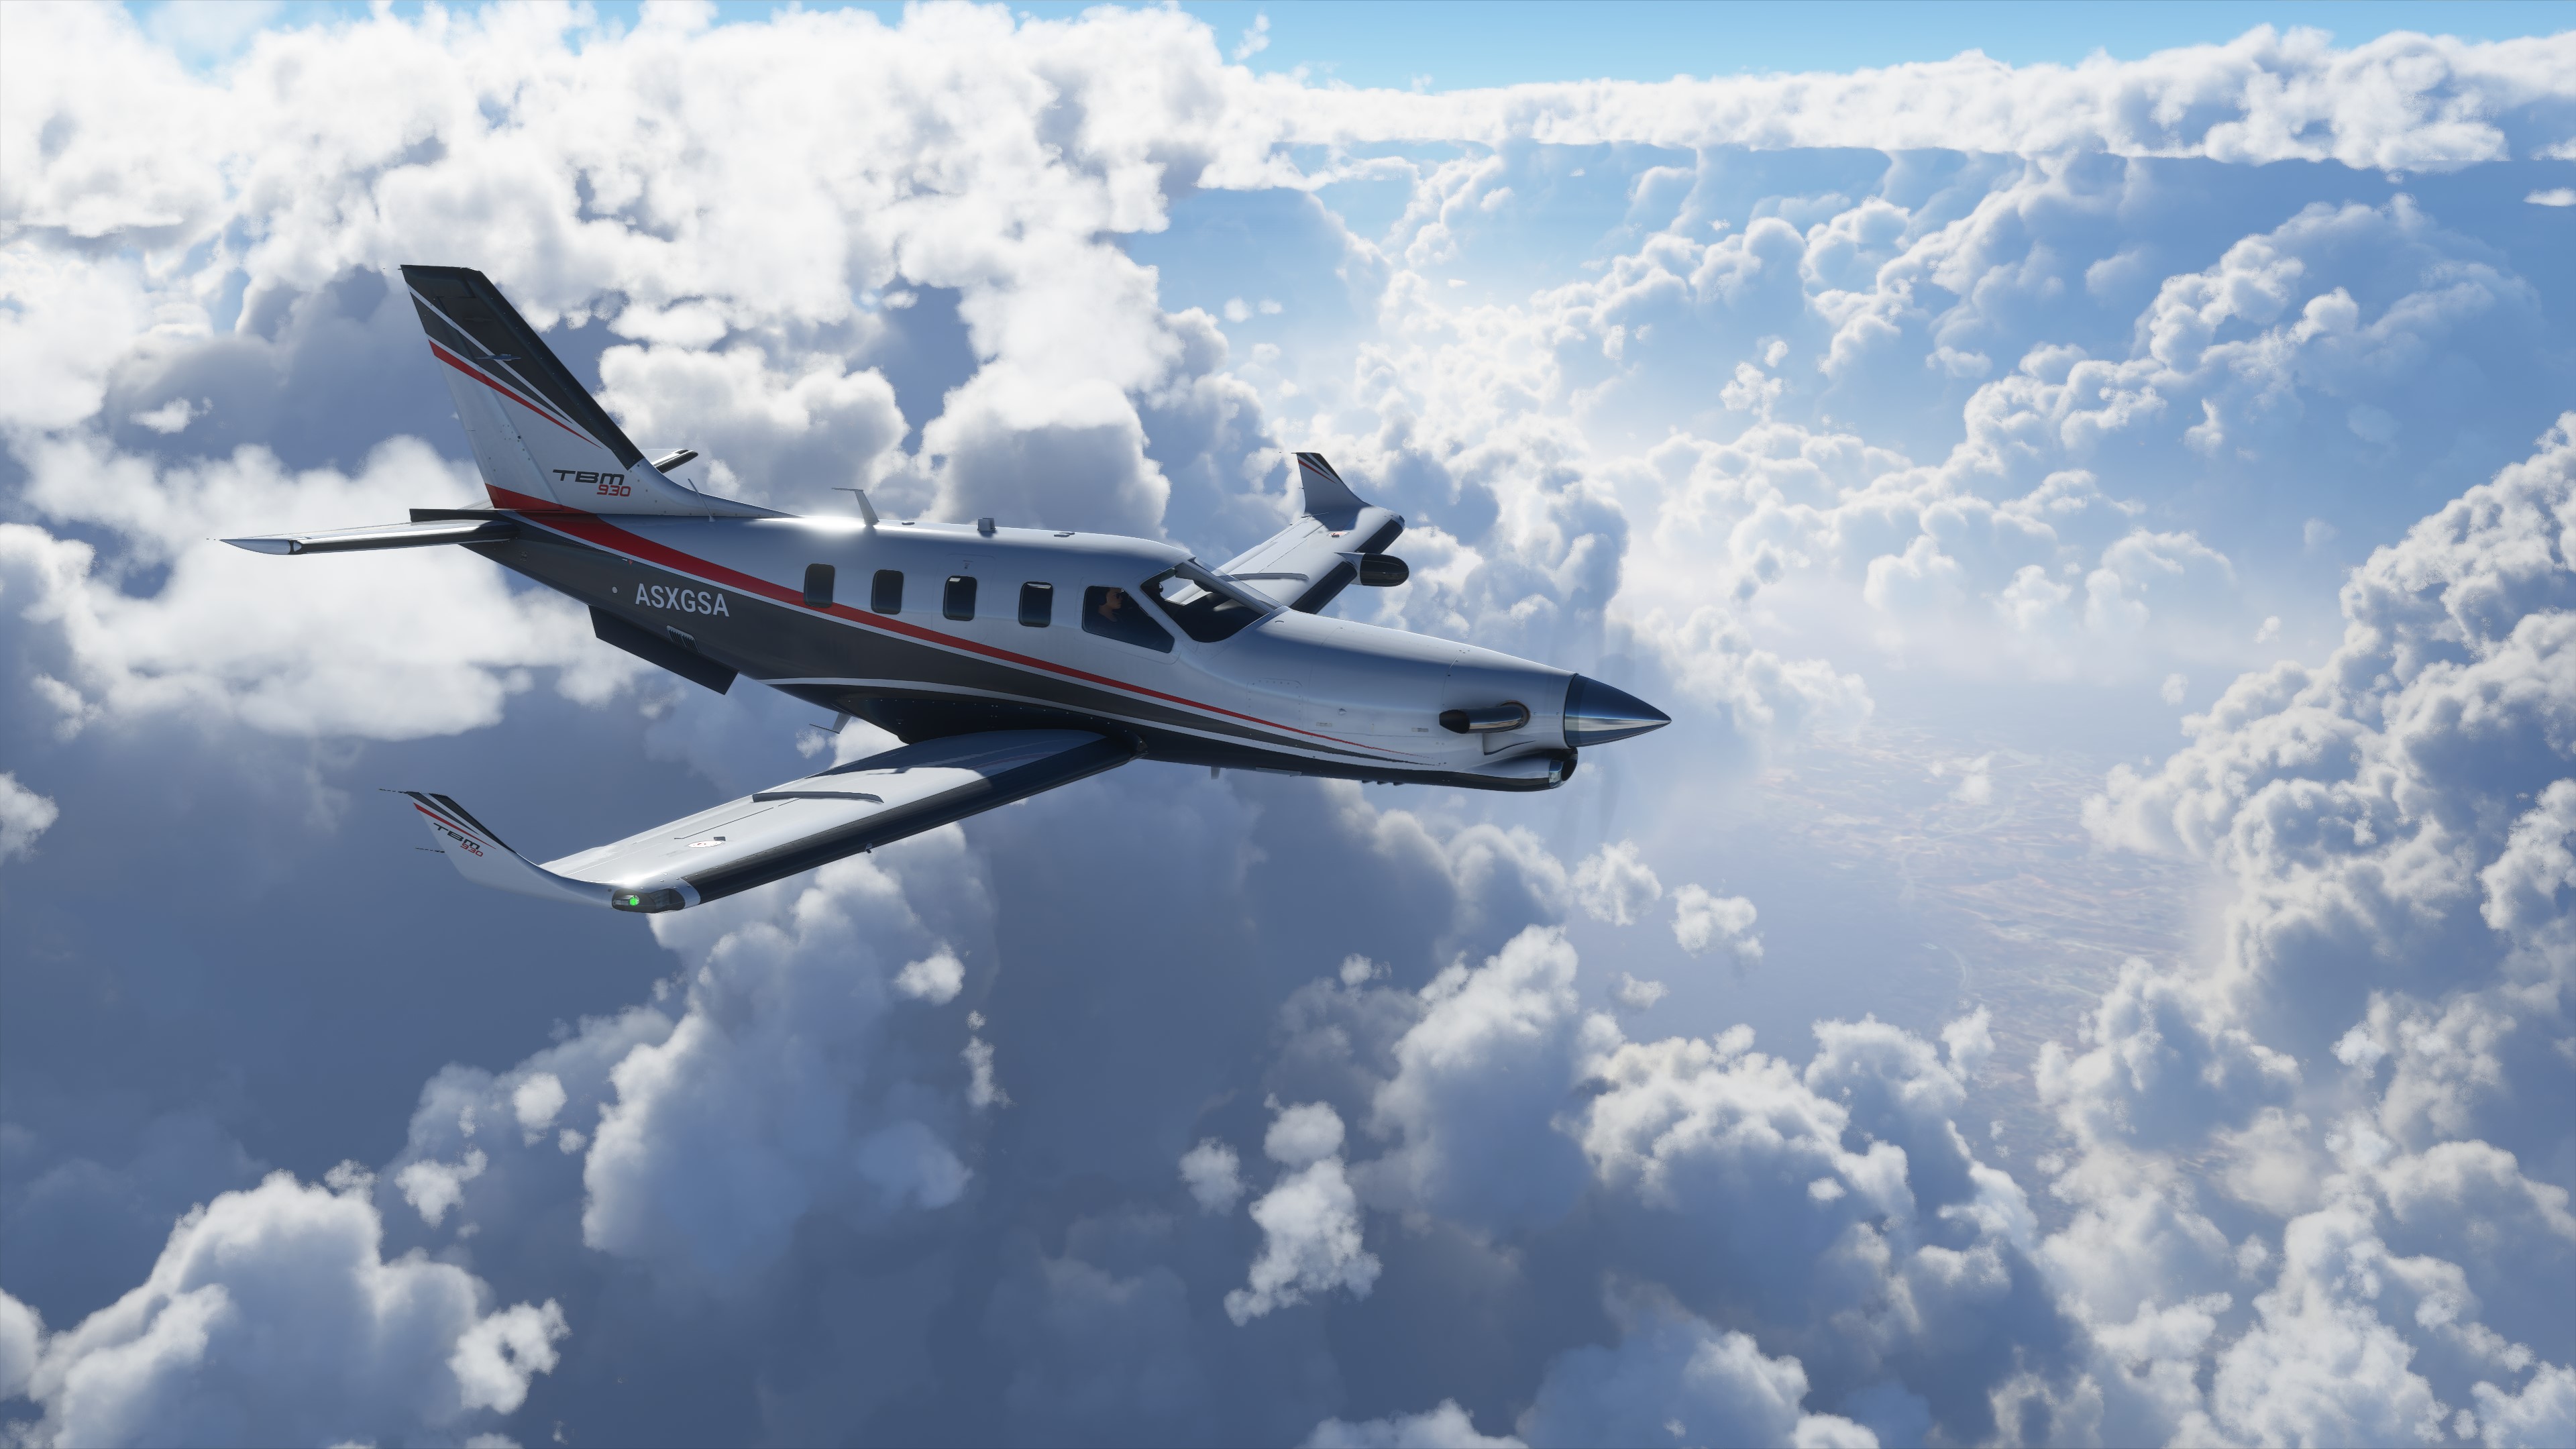 Vídeo: Teste do Microsoft Flight Simulator 2020 em vários